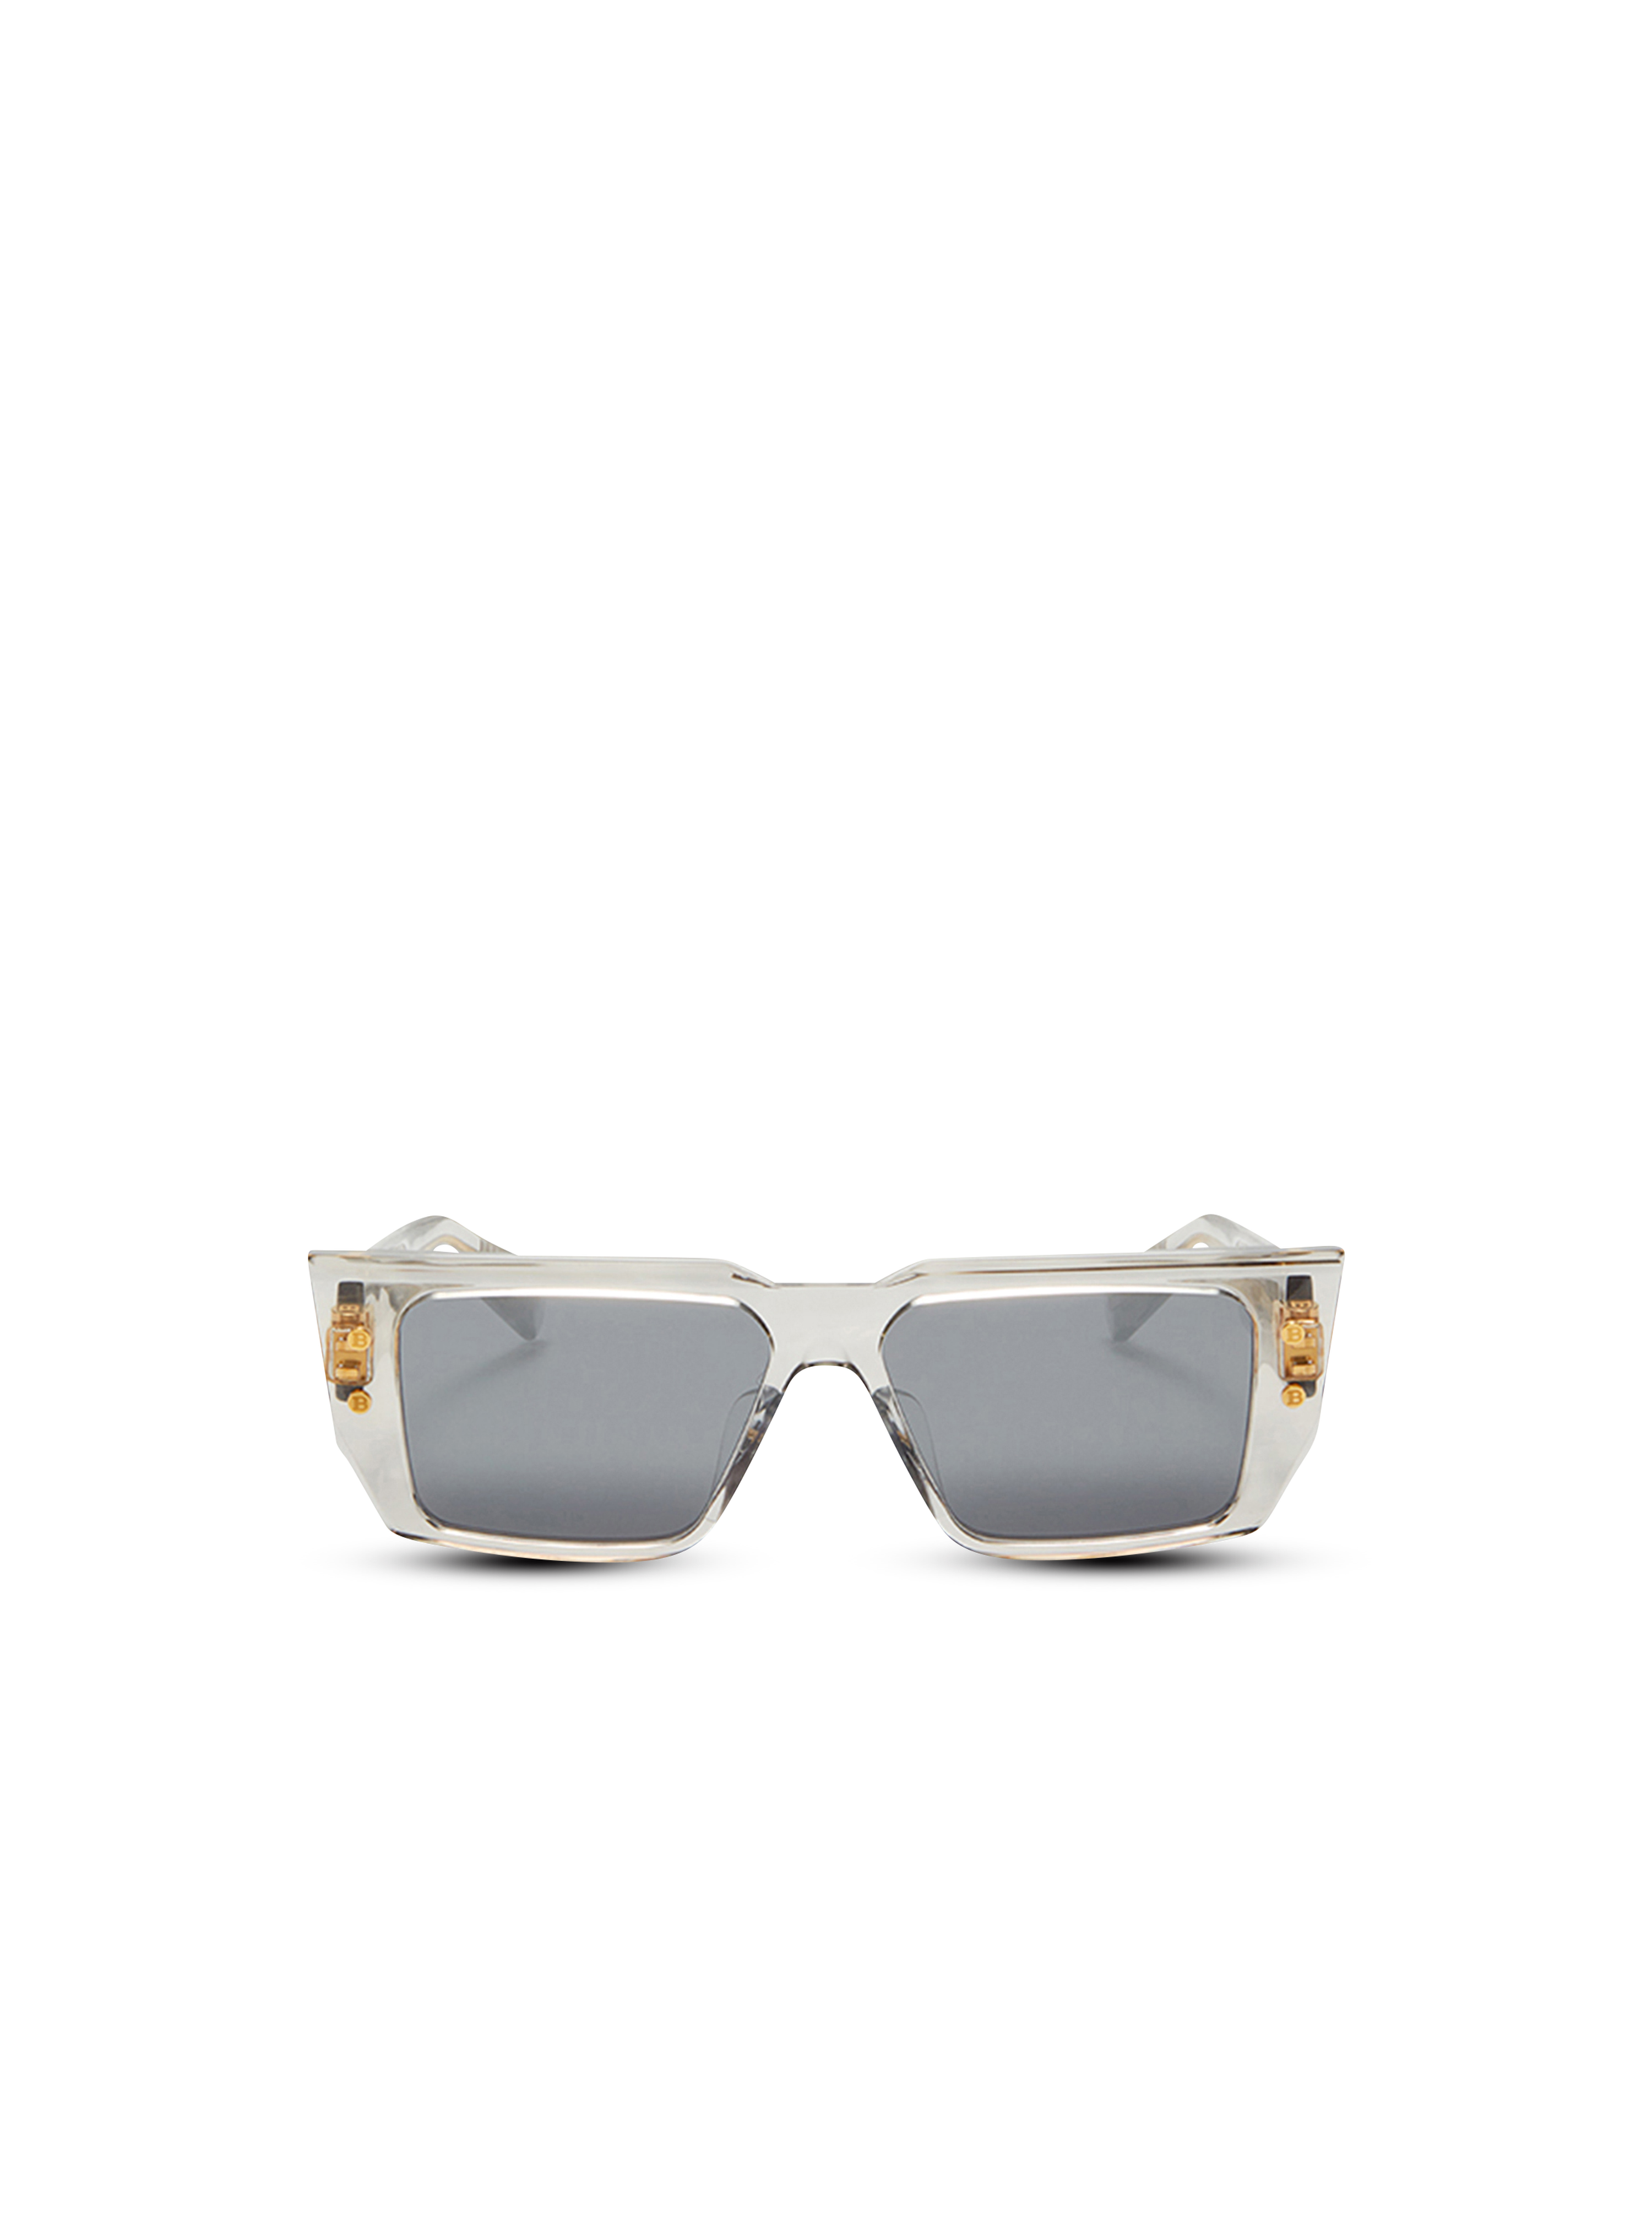 醋酸纤维 B-VI 太阳眼镜, grey